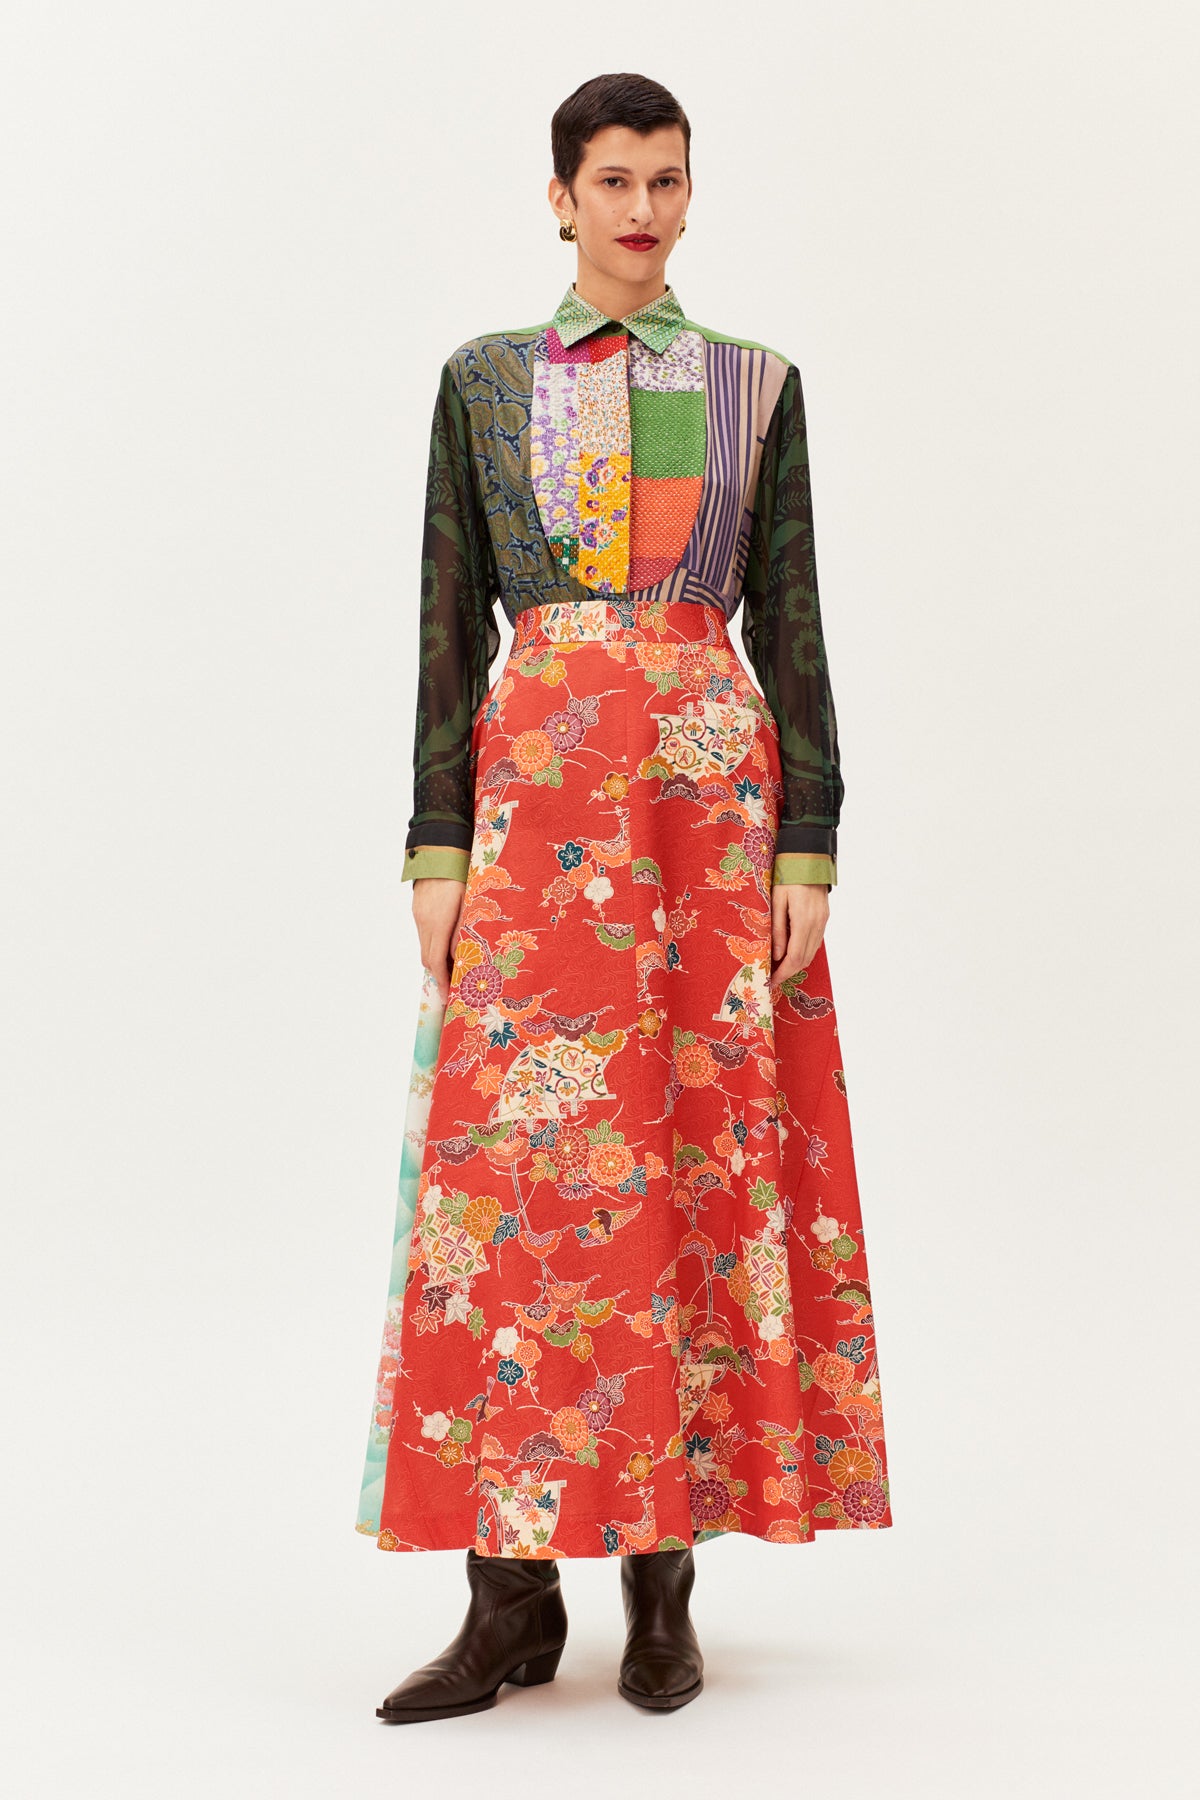 One-of-a-kind Vintage Kimono Long Skirt With Tucks